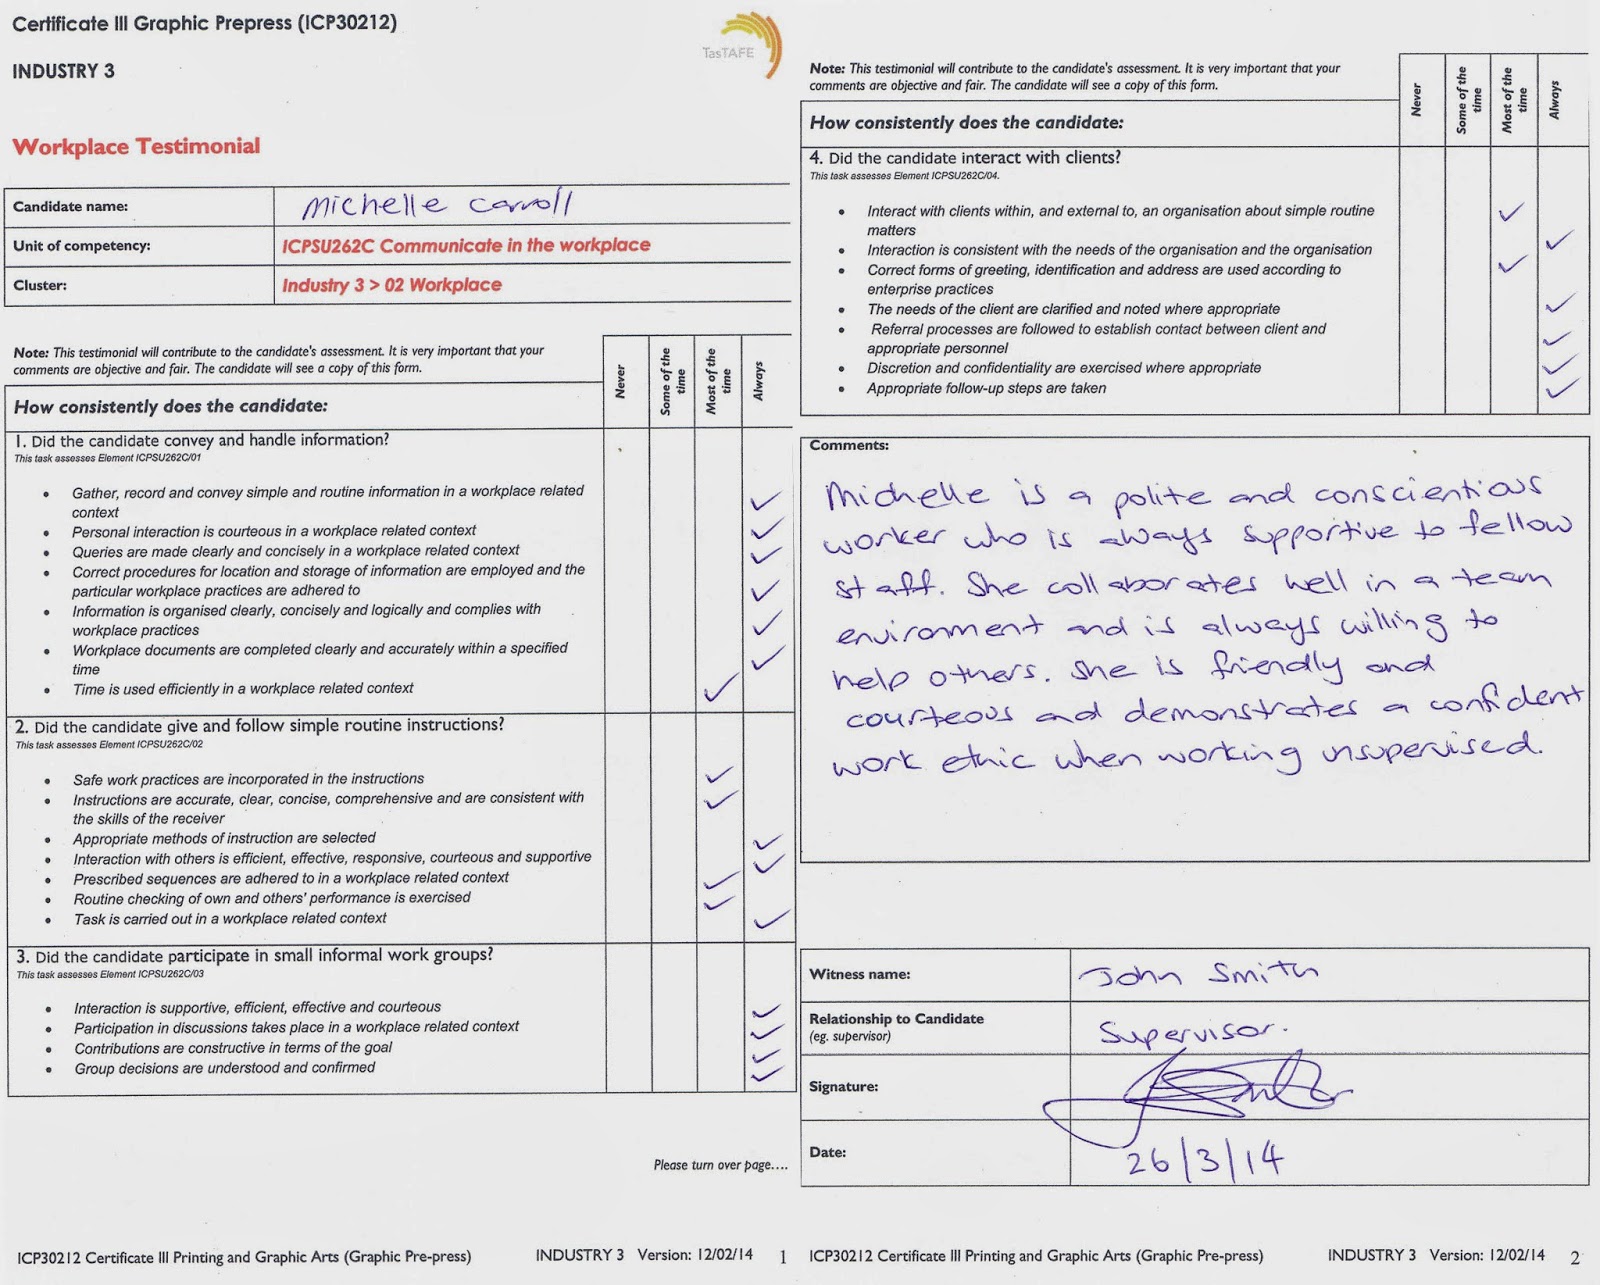 MichelleCarroll CertIIIGpp: i3 WORKPLACE - Final Assessment Task